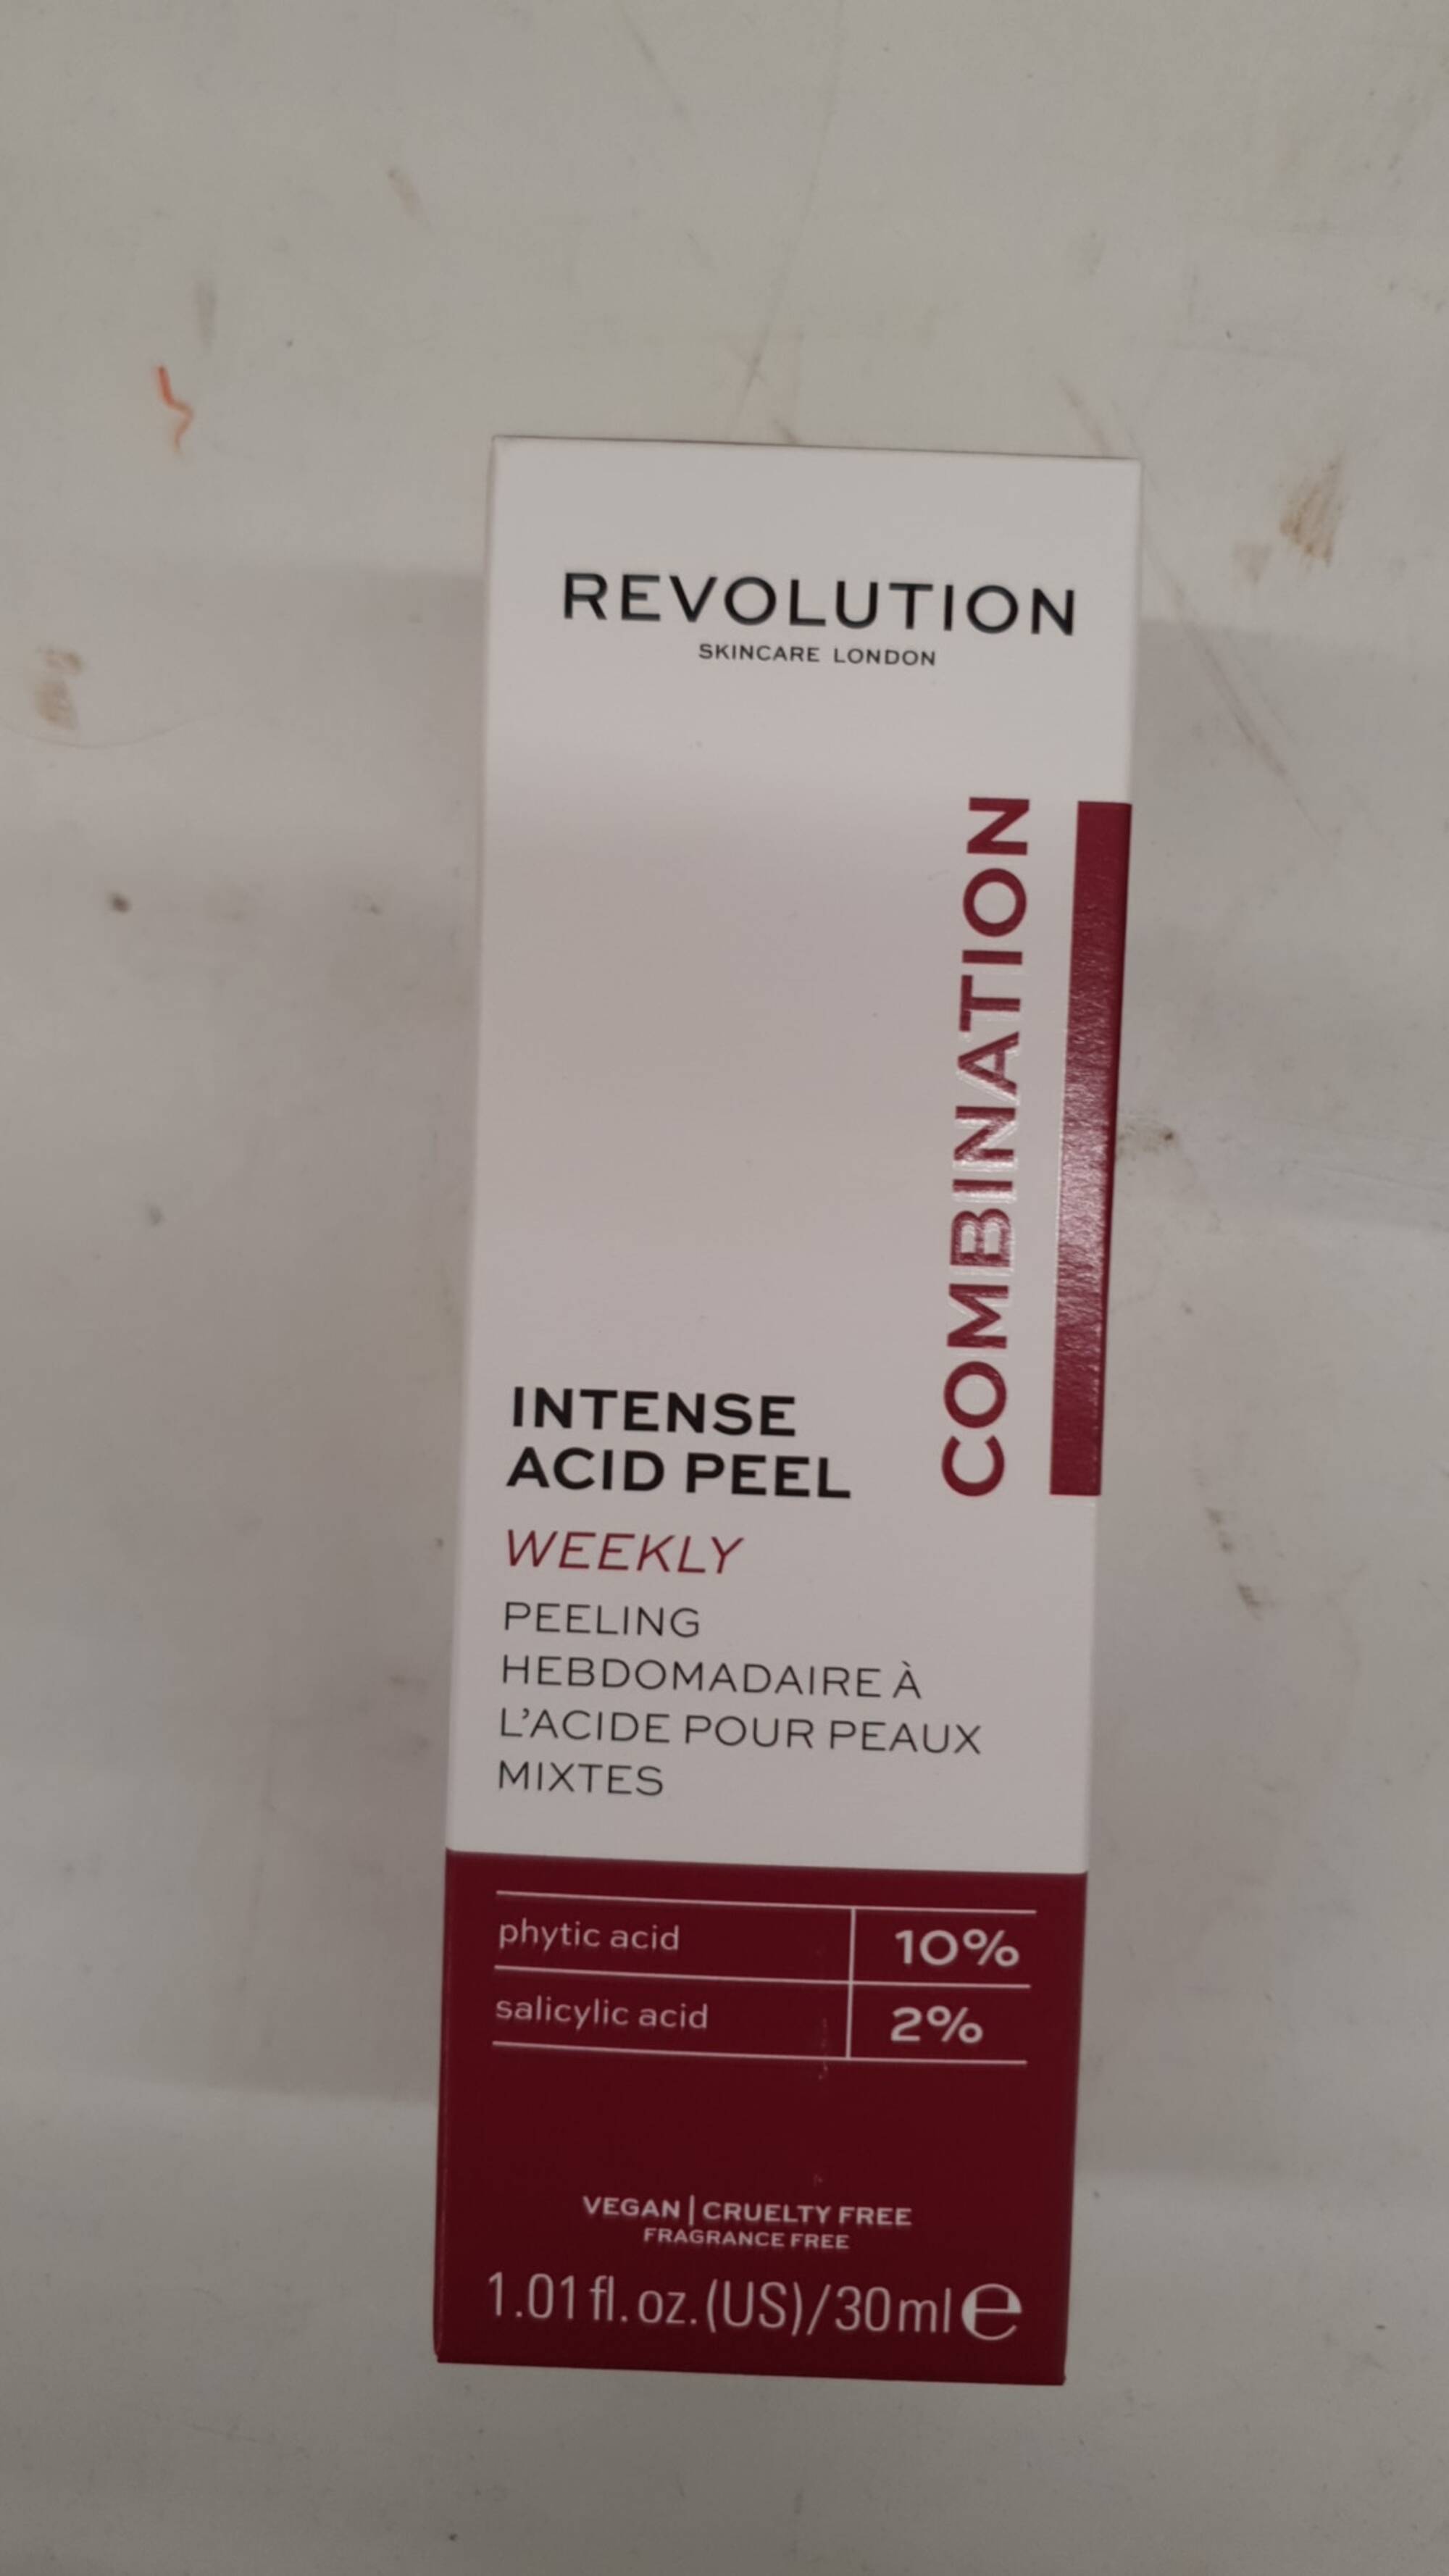 REVOLUTION - Peeling hebdomadaire à l'acide pour peaux mixtes